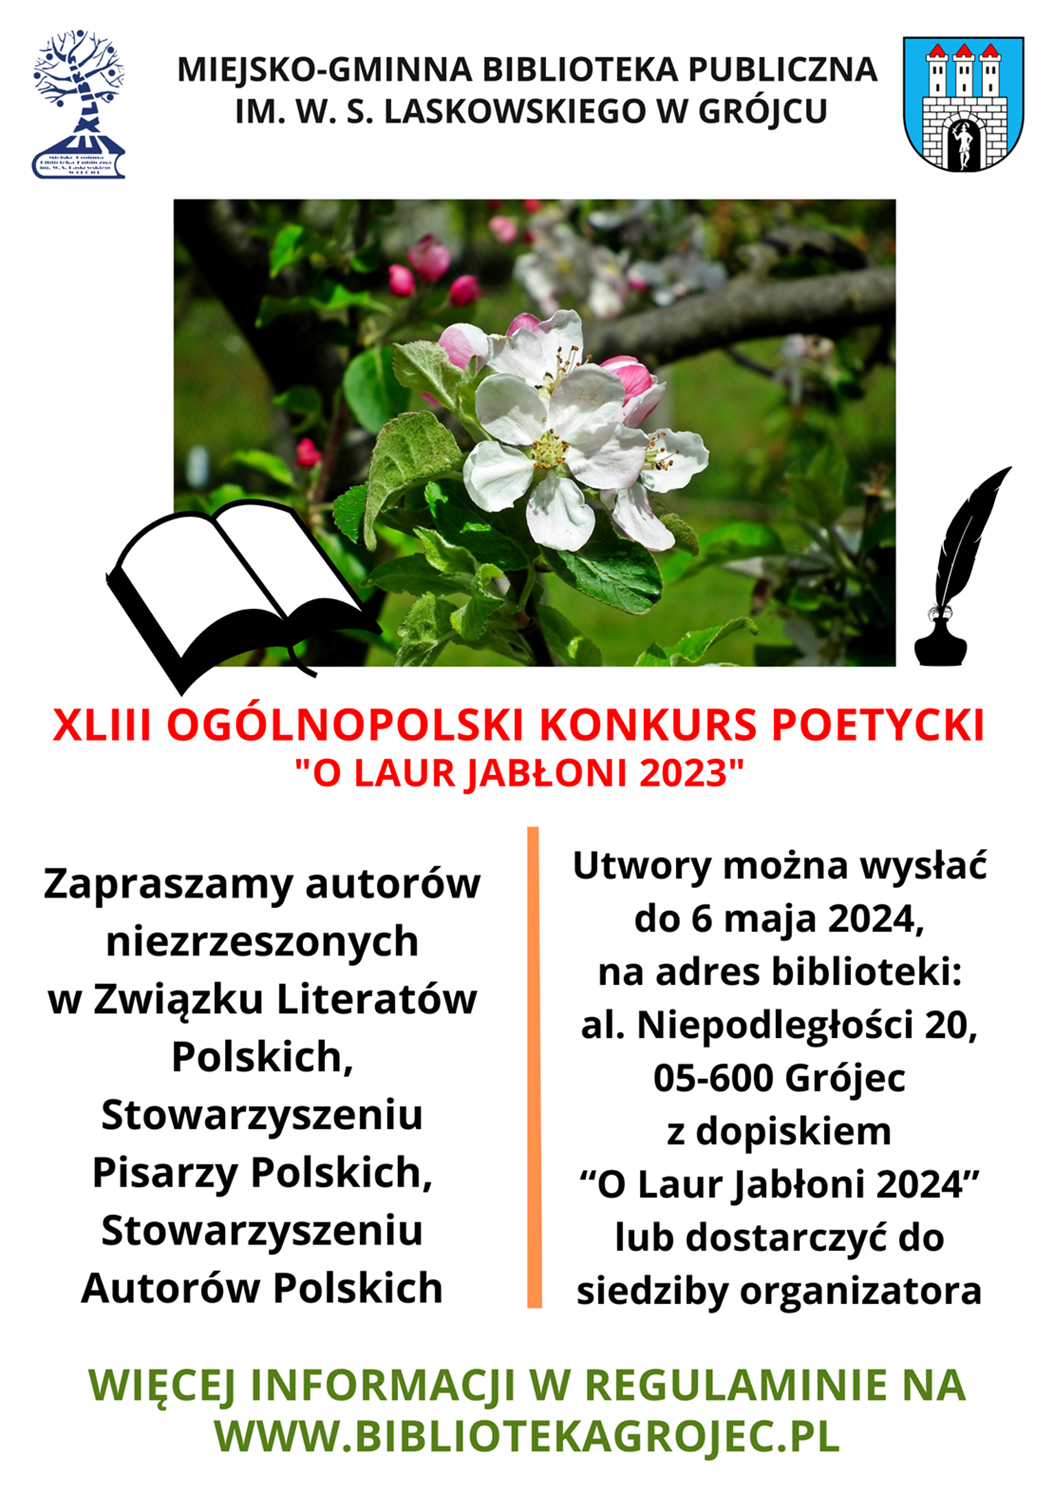 Plakat promujący konkurs poetycki organizowany przez Miejsko-Gminną Bibliotekę Publiczną im. Wacława Skarbimira Laskowskiego w Grójcu.